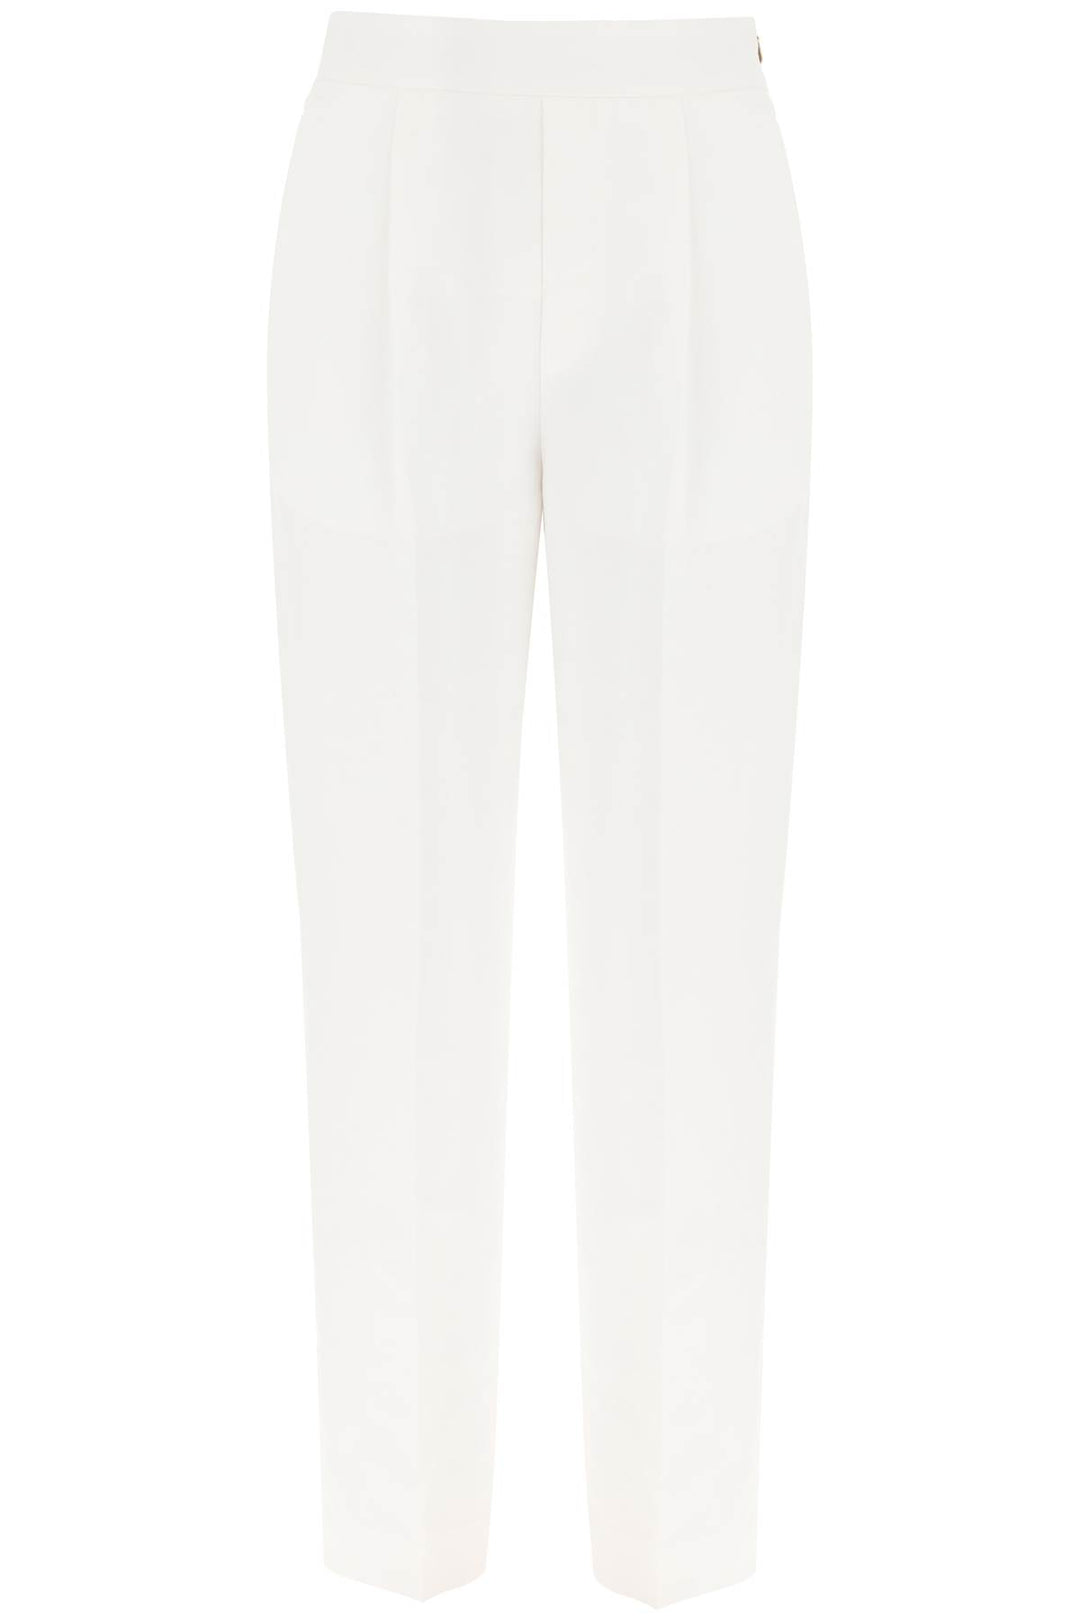 Agnona linen trousers-0